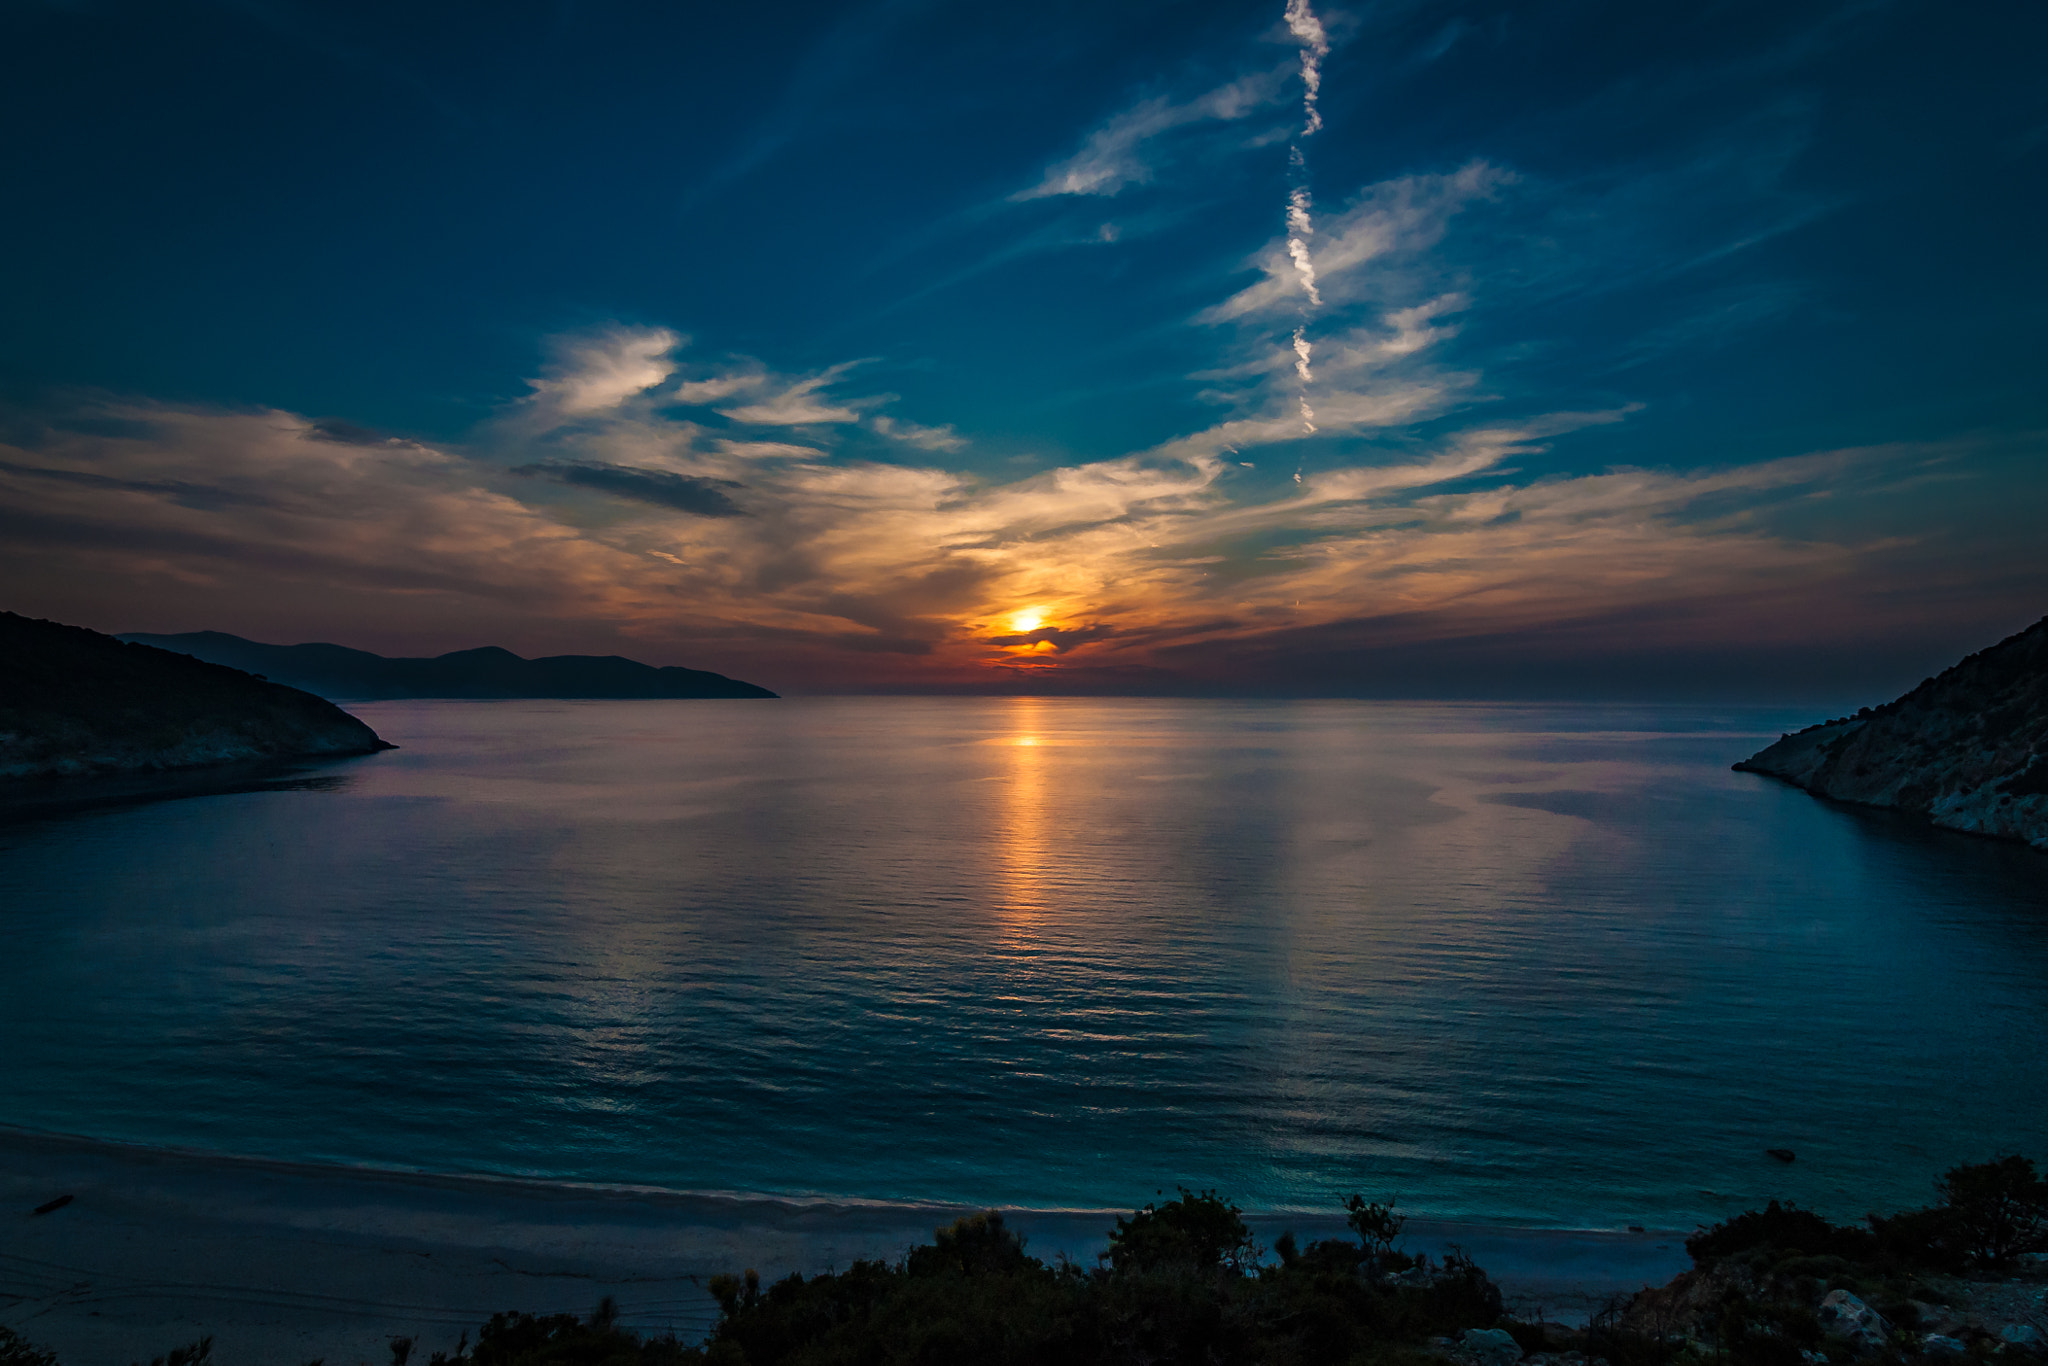 Sony Alpha DSLR-A700 + 20mm F2.8 sample photo. Sunset over myrtos beach photography